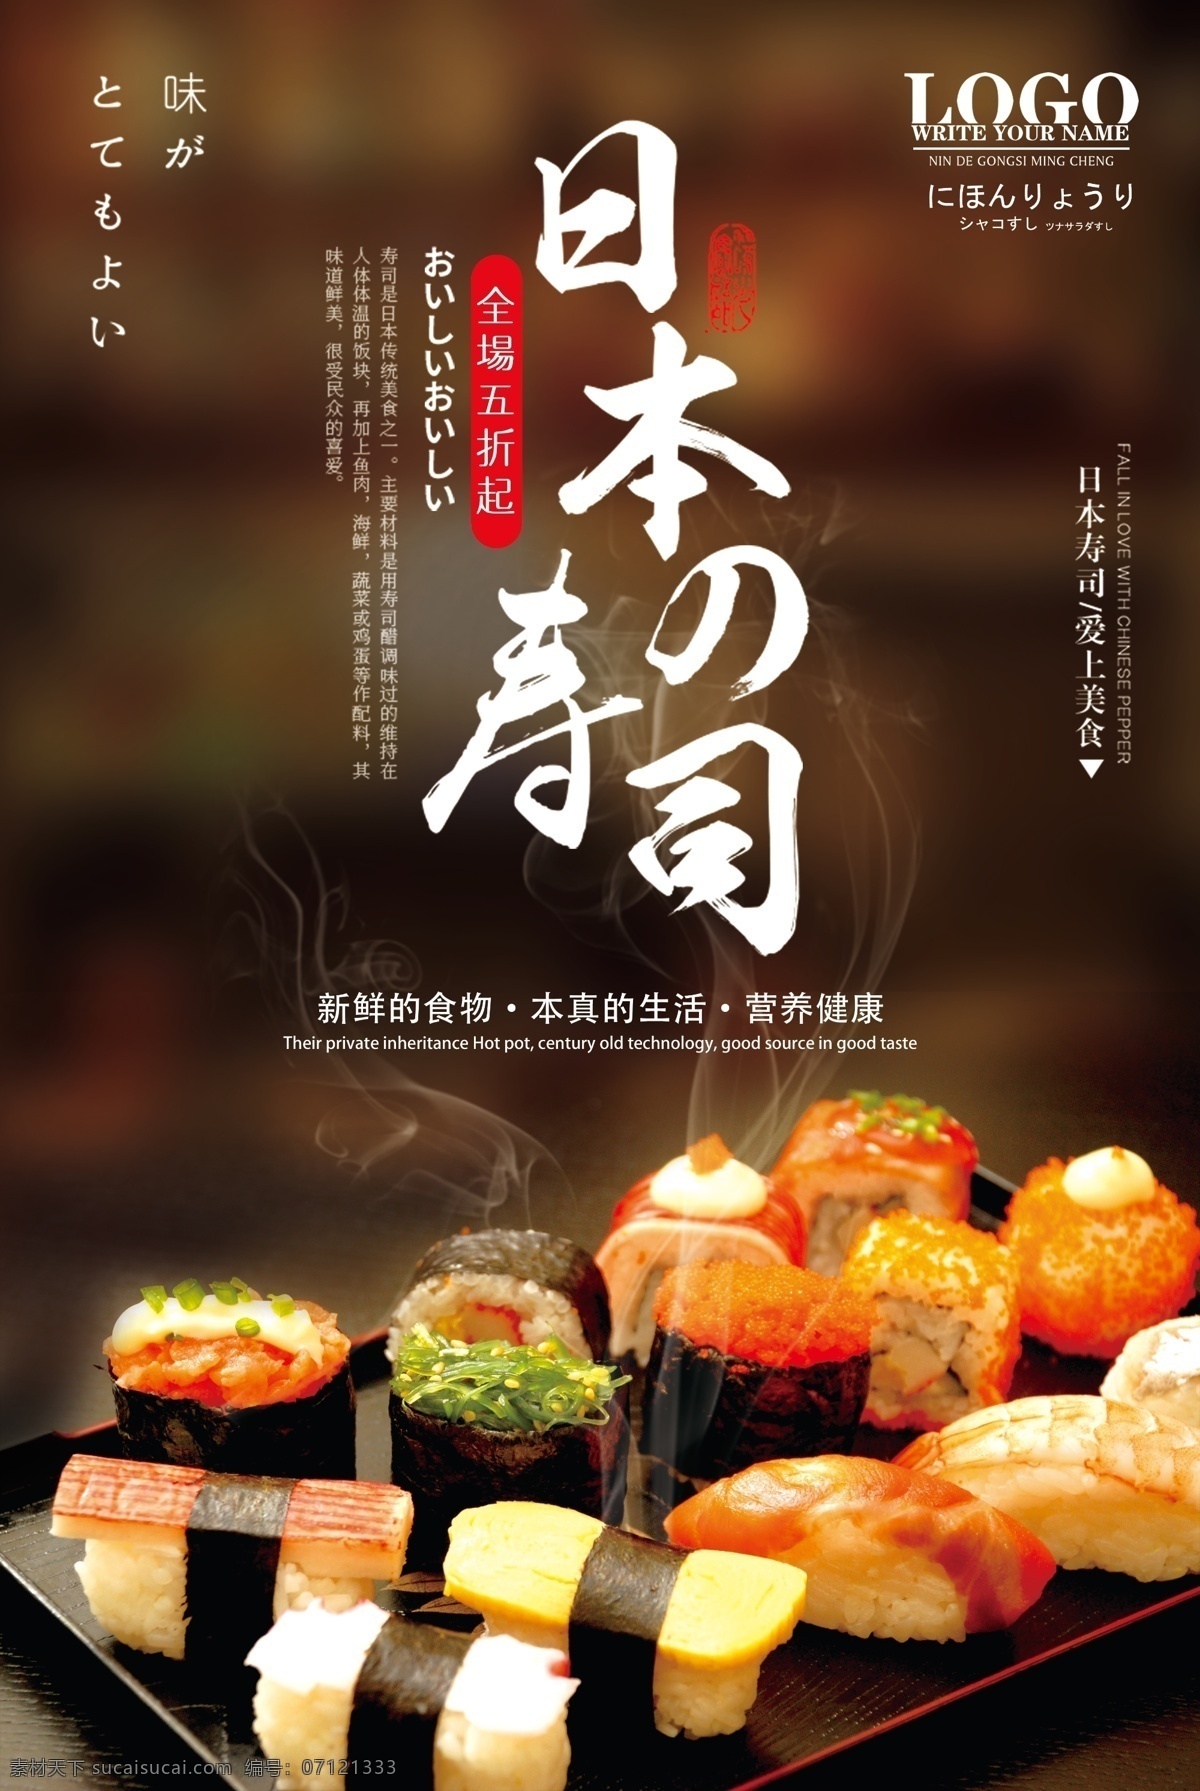 日本寿司 寿司 寿司店 寿司海报 寿司展板 寿司广告 日本料理 寿司文化 寿司促销 寿司灯箱 日式寿司 三文鱼寿司 生鱼片寿司 寿司宣传单 寿司素材